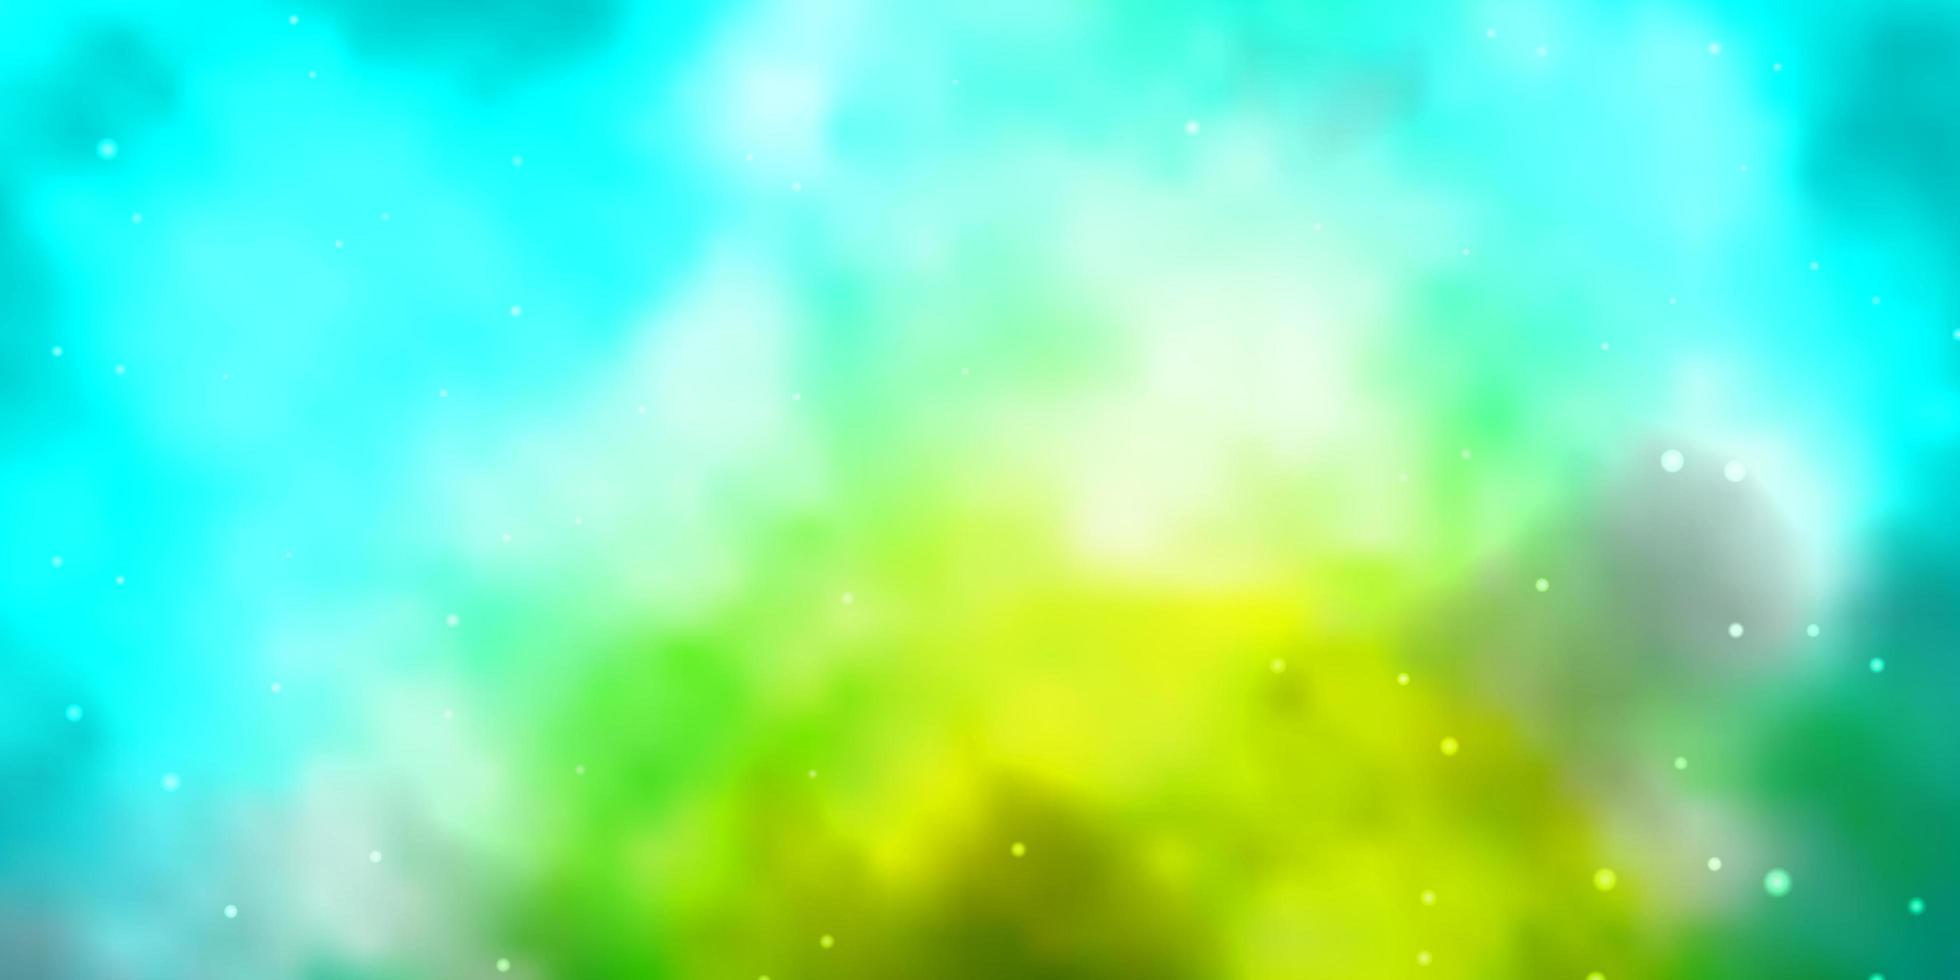 ljusblå, grön vektorlayout med ljusa stjärnor. färgglad illustration i abstrakt stil med lutningsstjärnor. design för din företagsreklam. vektor